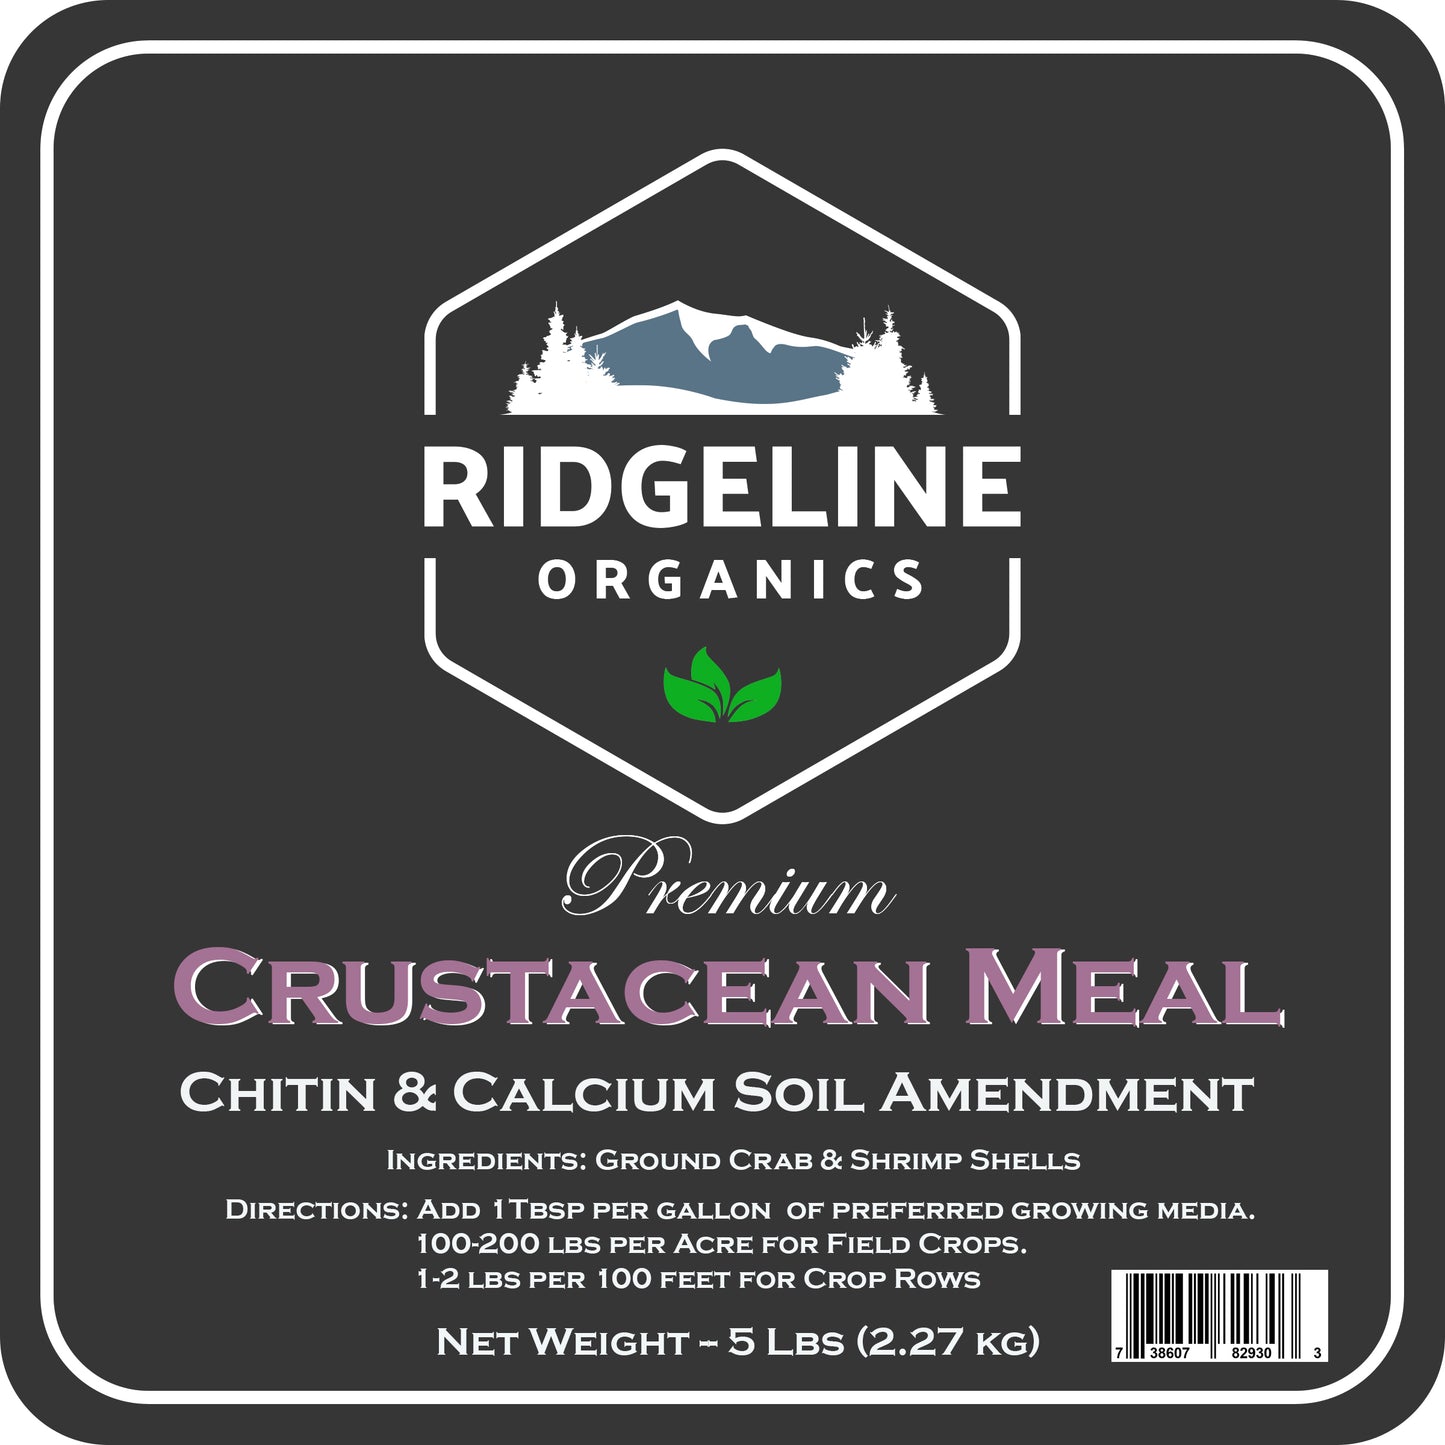 Ridgeline Crustacean Meal